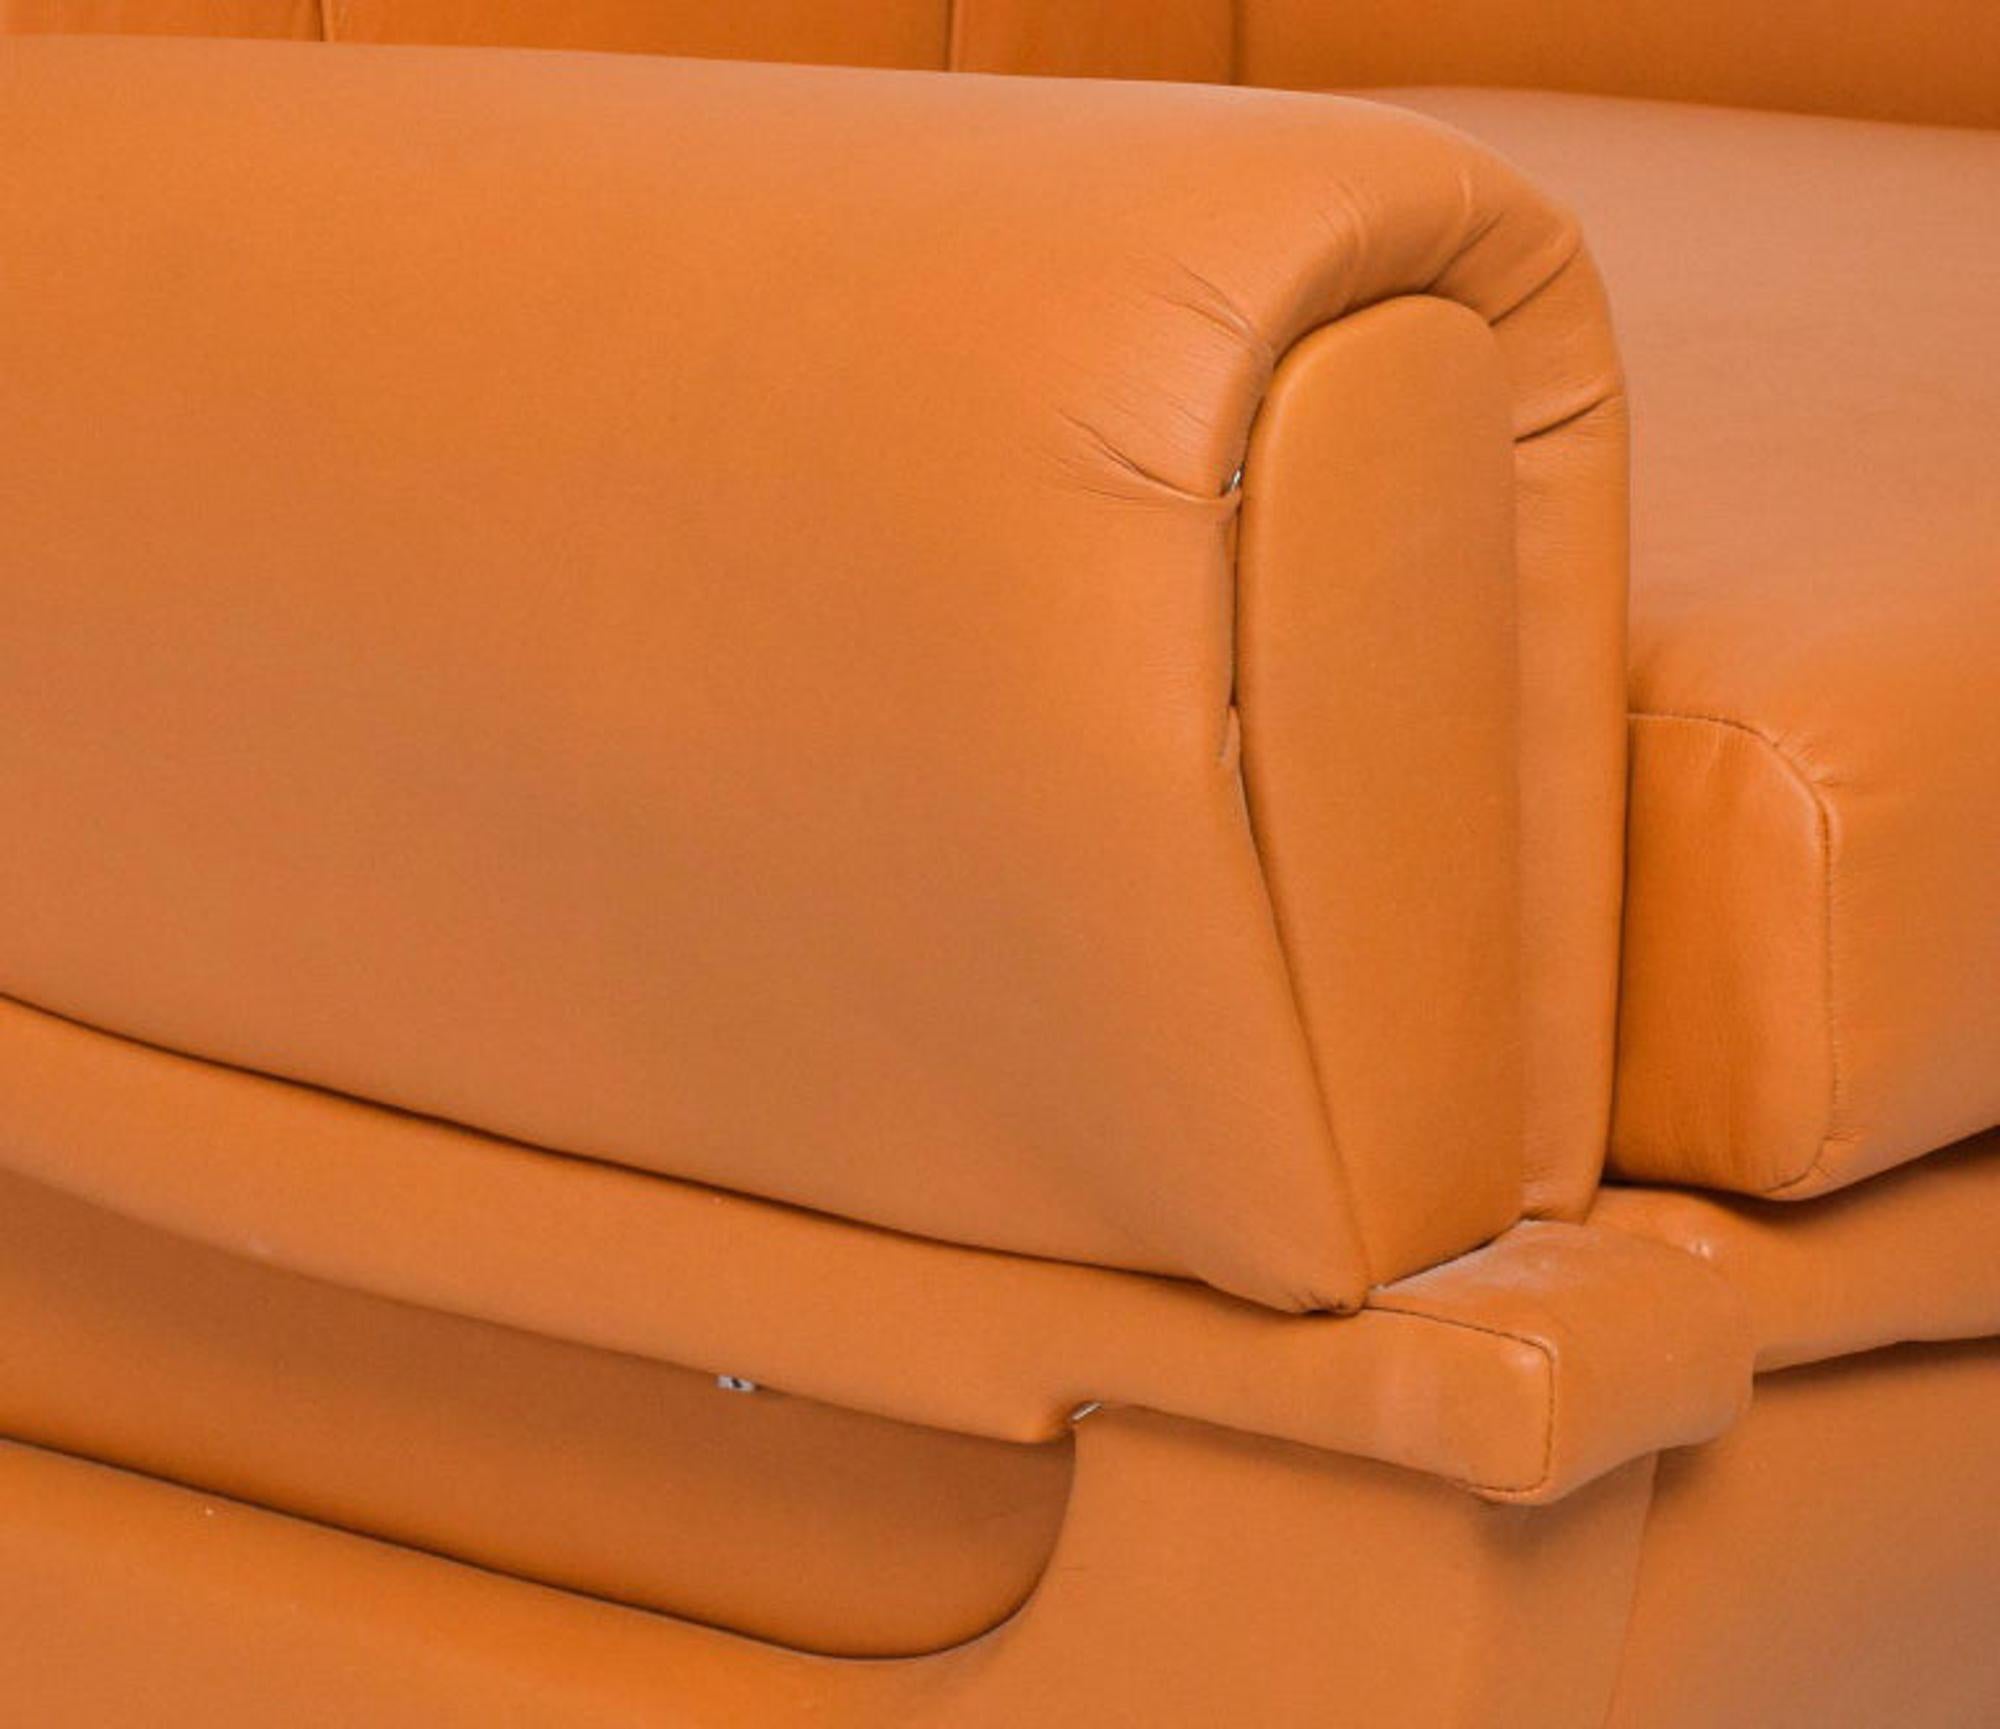 Fauteuils Lounge Art Deco en cuir Butterscotch, ensemble de 2. 
Conçu par Giuseppe Munari, en Italie.
Les chaises ne sont pas marquées.
Inspiration Jean Michel Frank de France.
33 H X 39 D x 34 W pouces
Siège : 16,5 de hauteur, accoudoir